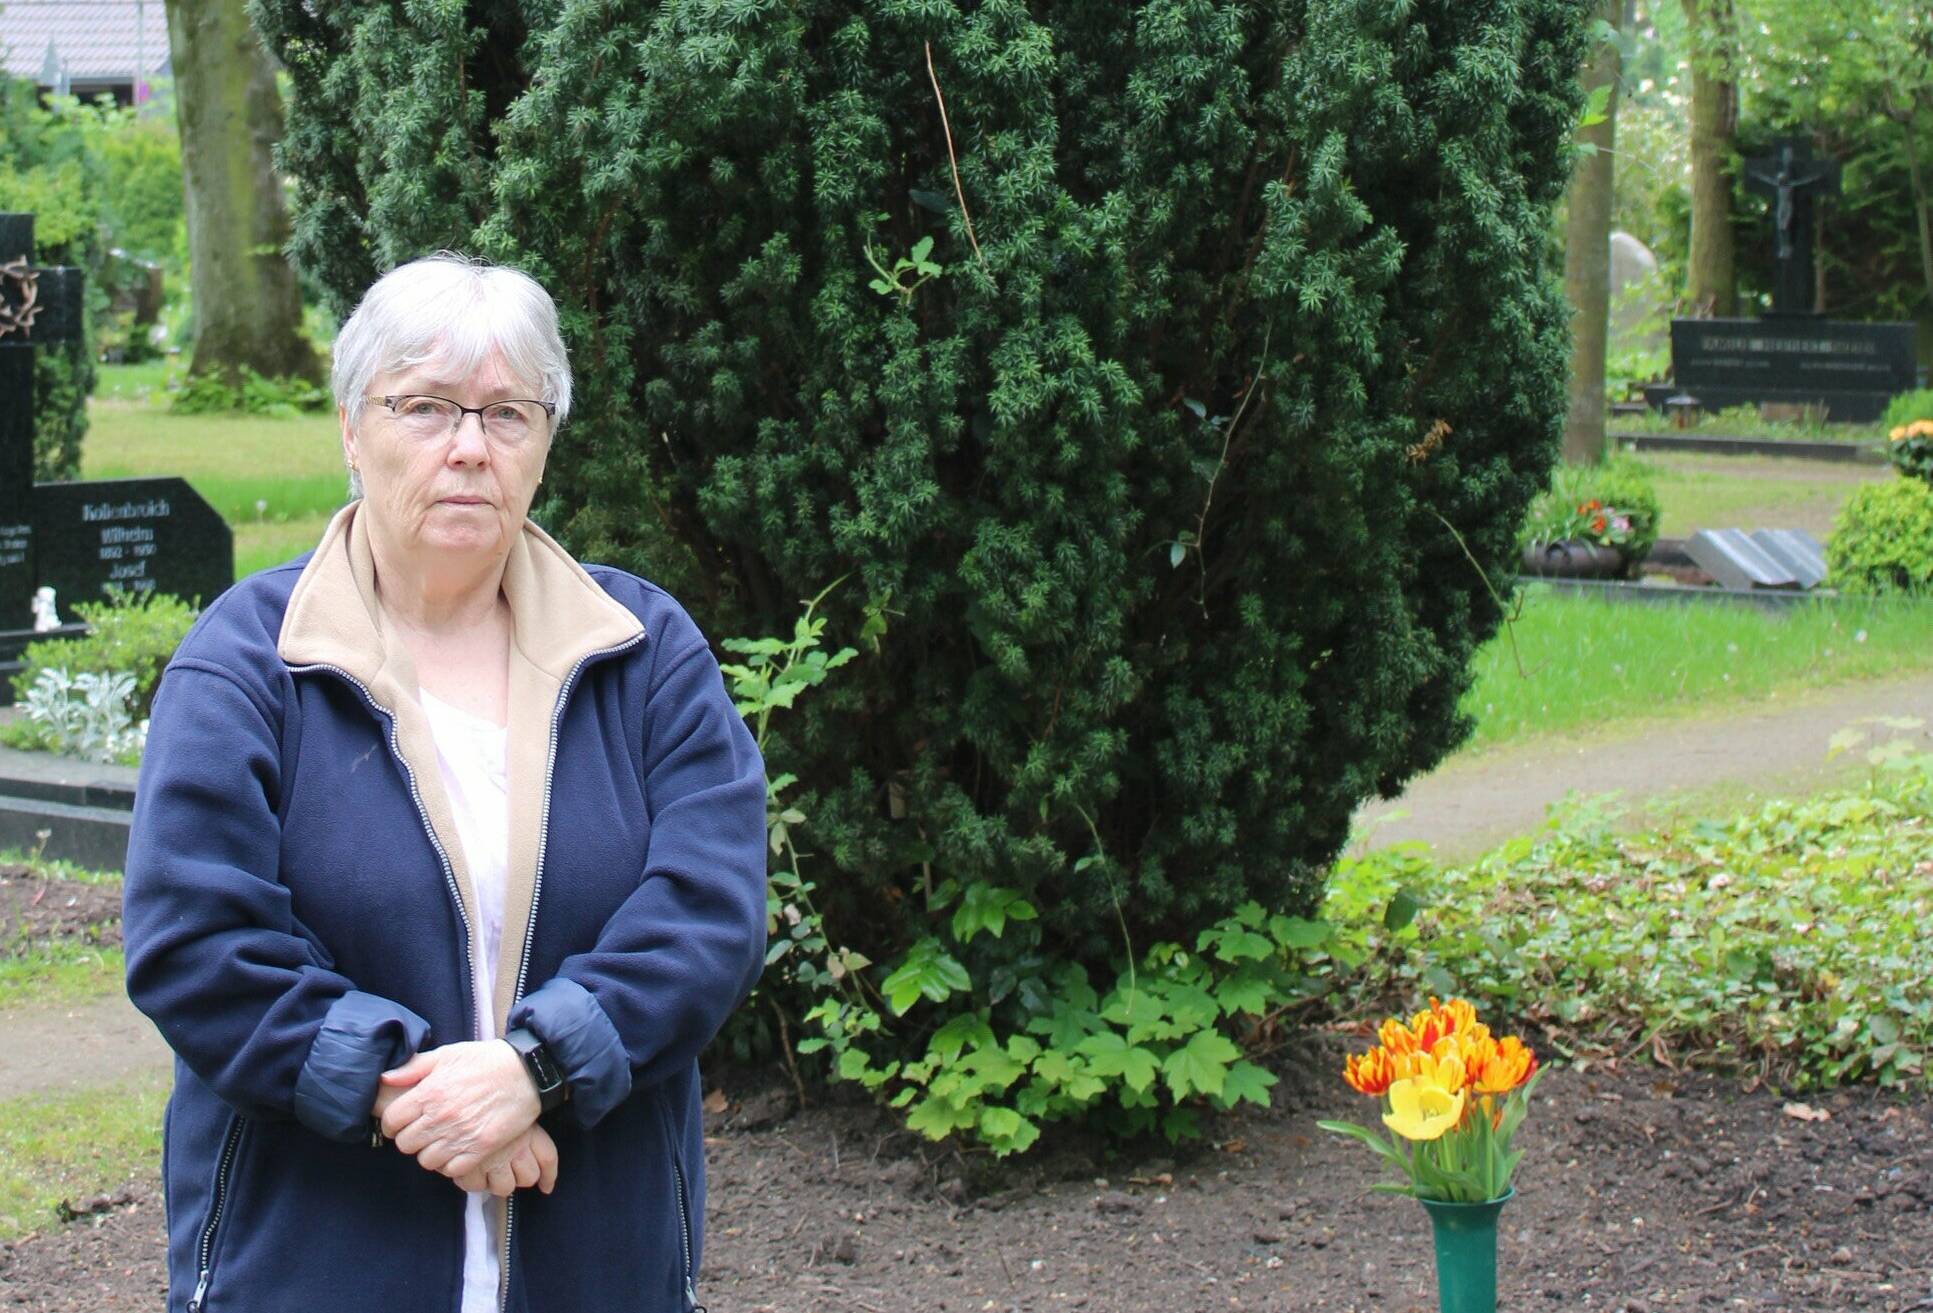  Agnes Keusen vor dem geräumten Grab ihrer Großeltern: Im Schatten des Lebensbaums will sie weiterhin regelmäßig eine Blumenvase aufstellen.  